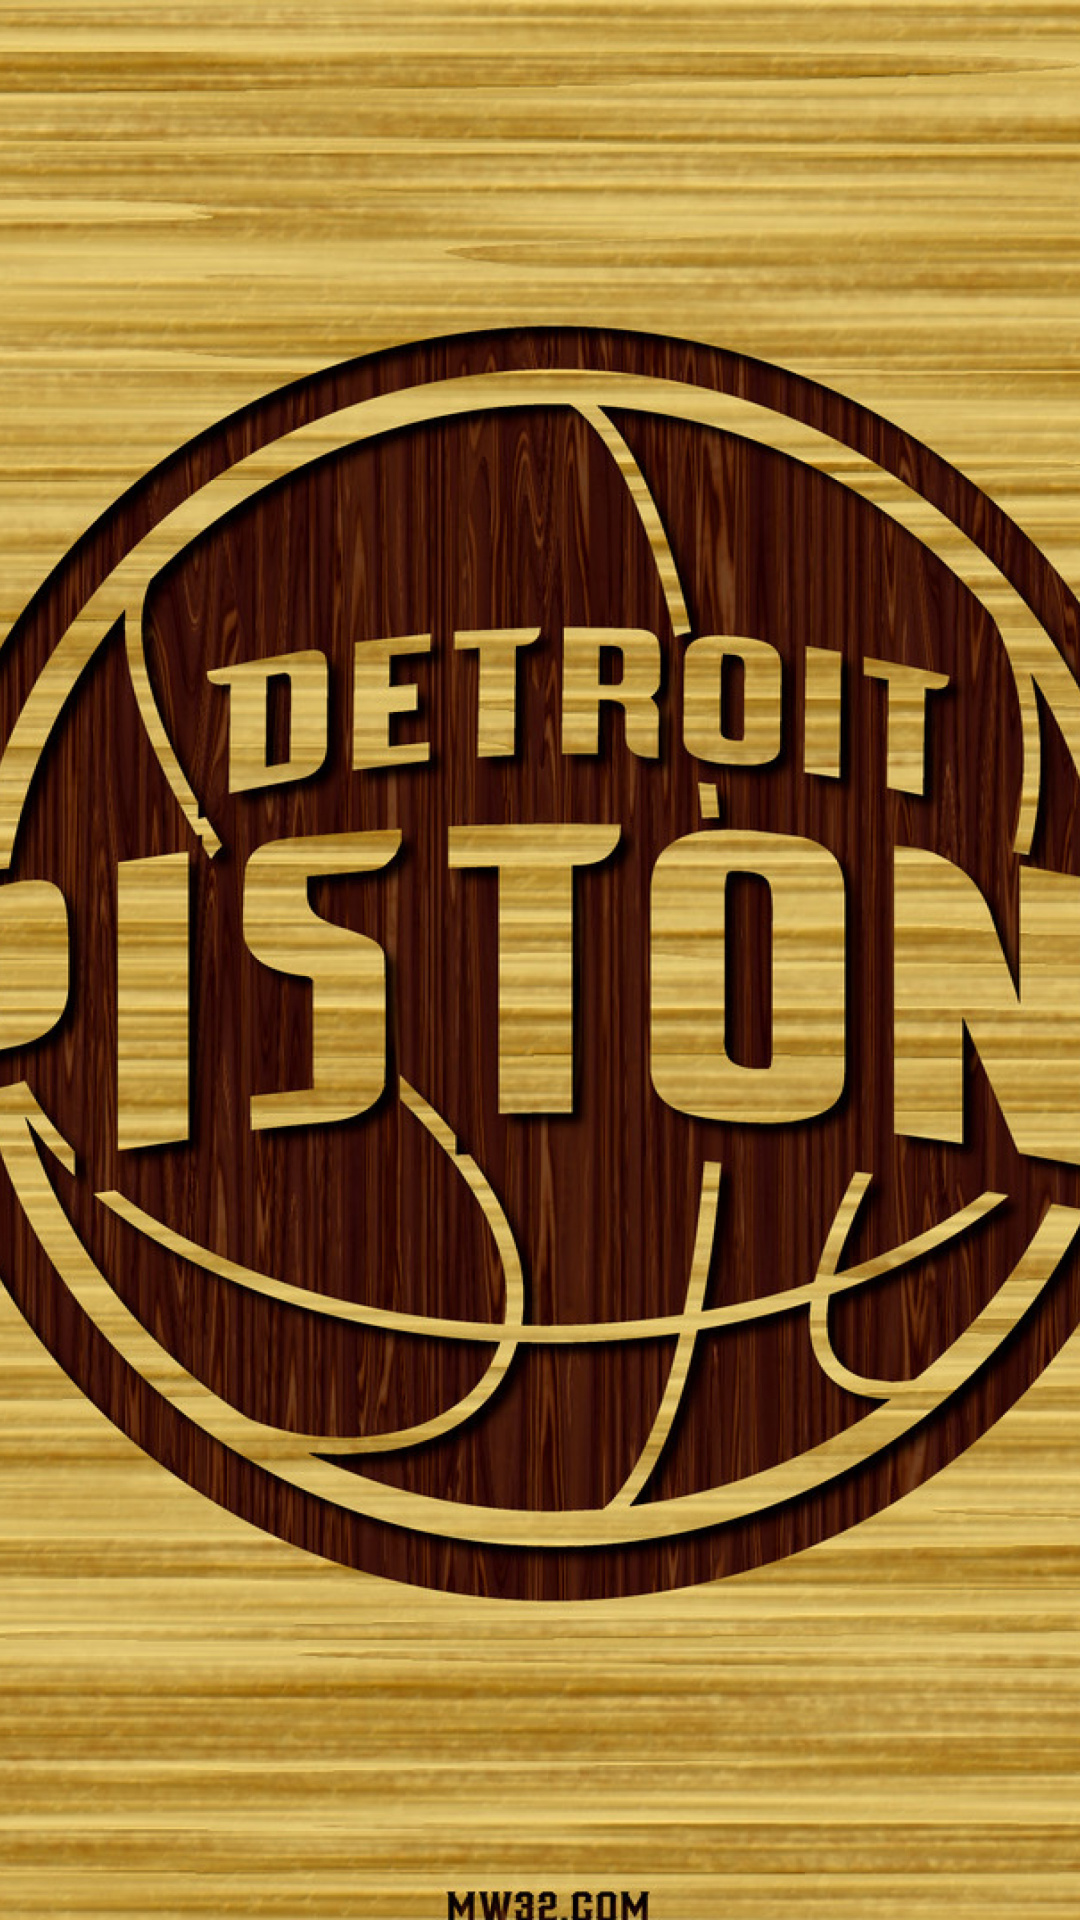 Detroit Pistons, NBA screenshot #1 1080x1920